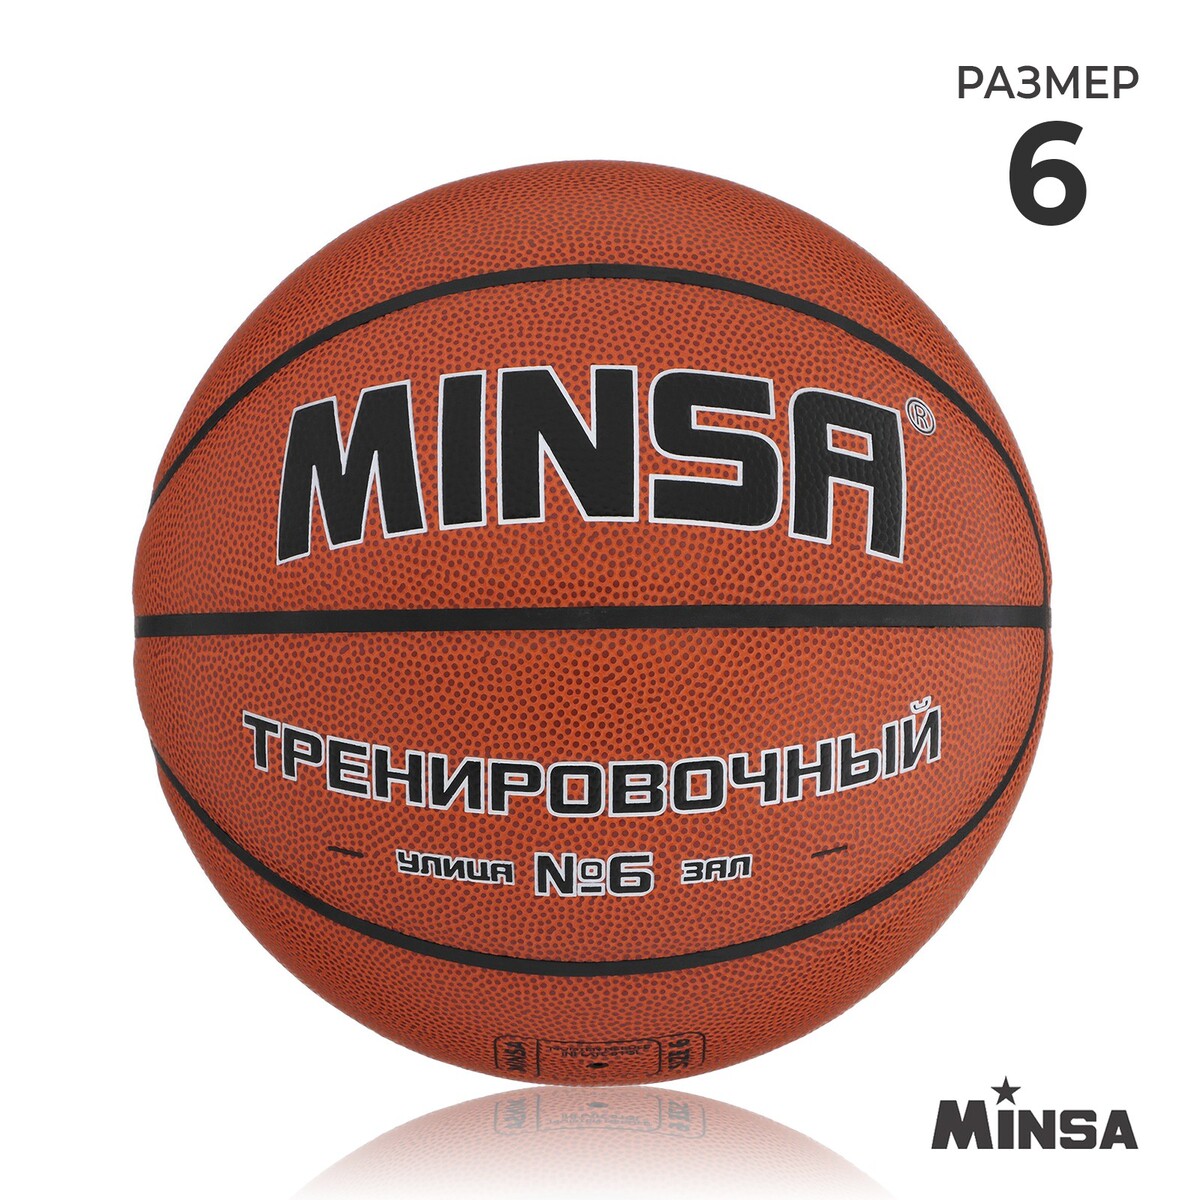 Баскетбольный мяч minsa, тренировочный, pu, клееный, 8 панелей, р. 6 баскетбольный мяч minsa матчевый microfiber pu клееный 8 панелей р 6